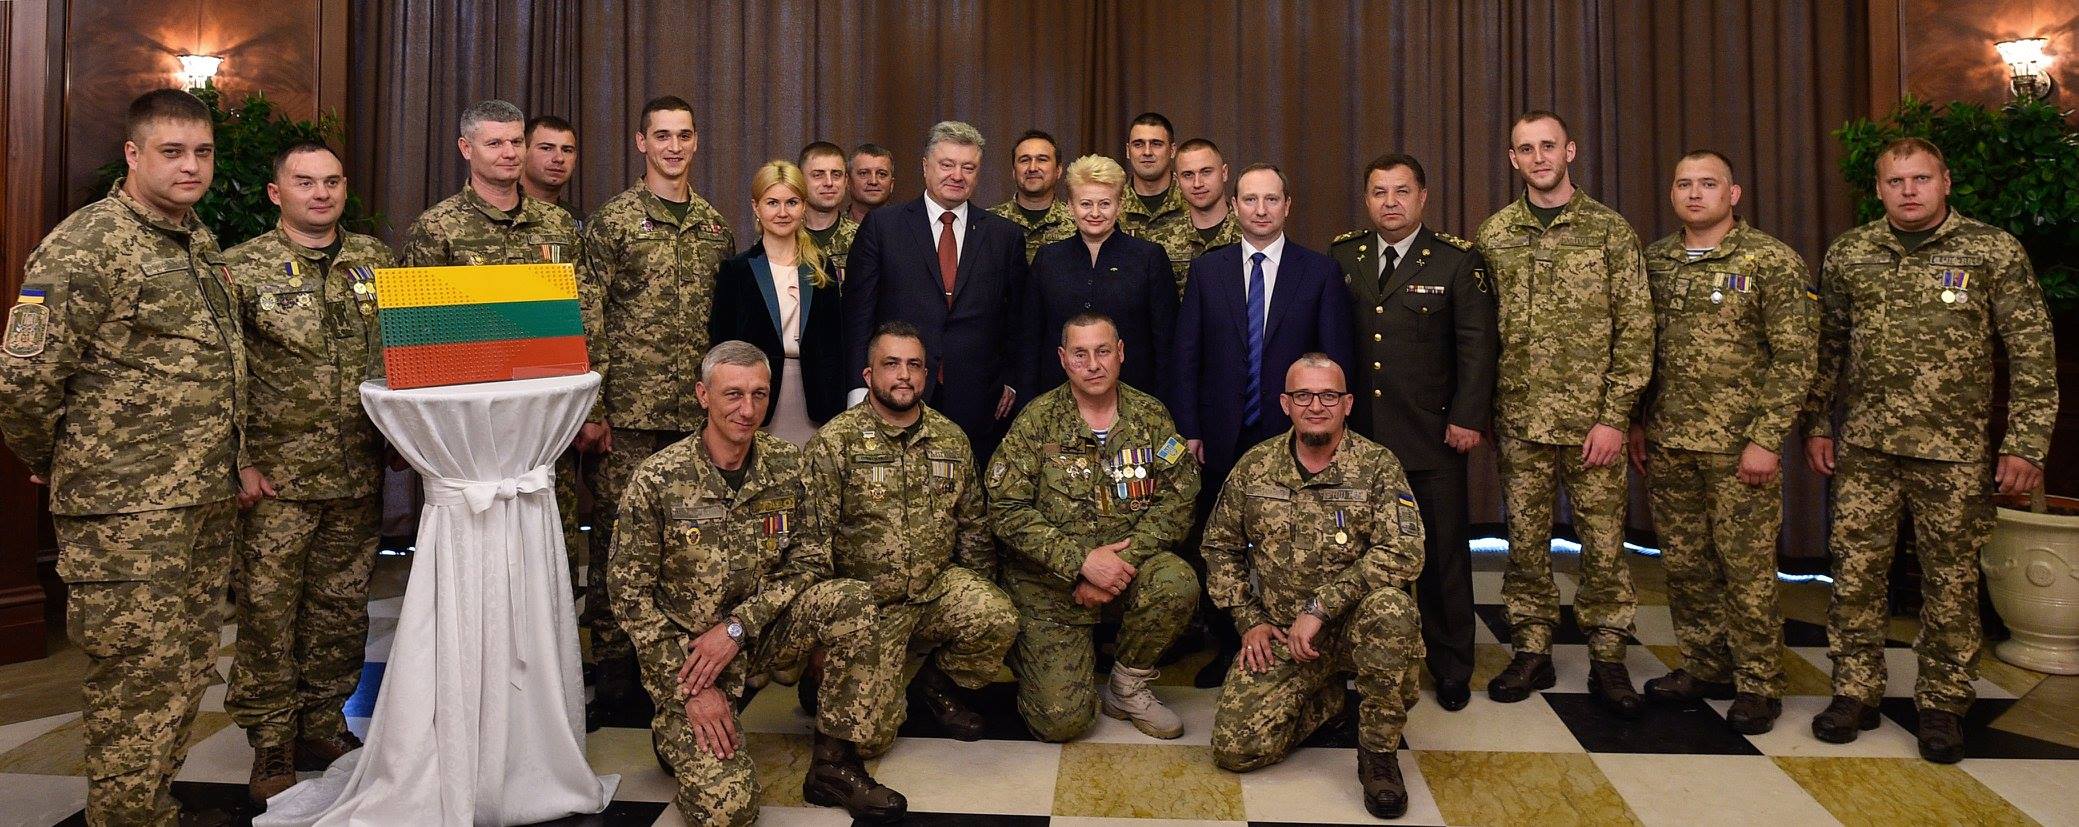 Ще 50 українських військових пройдуть лікування в Литві, - Порошенко